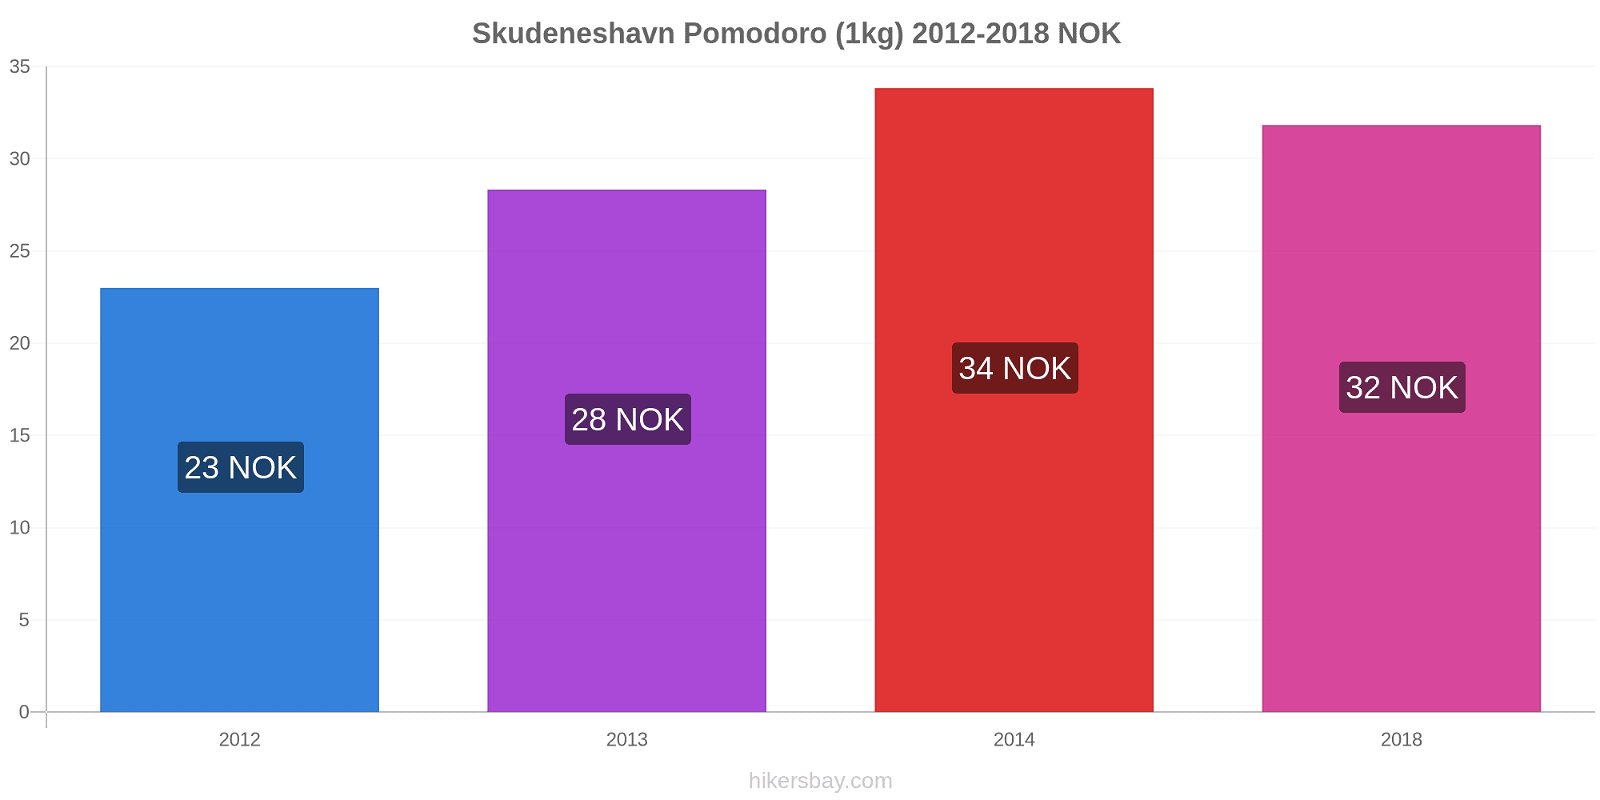 Skudeneshavn variazioni di prezzo Pomodoro (1kg) hikersbay.com